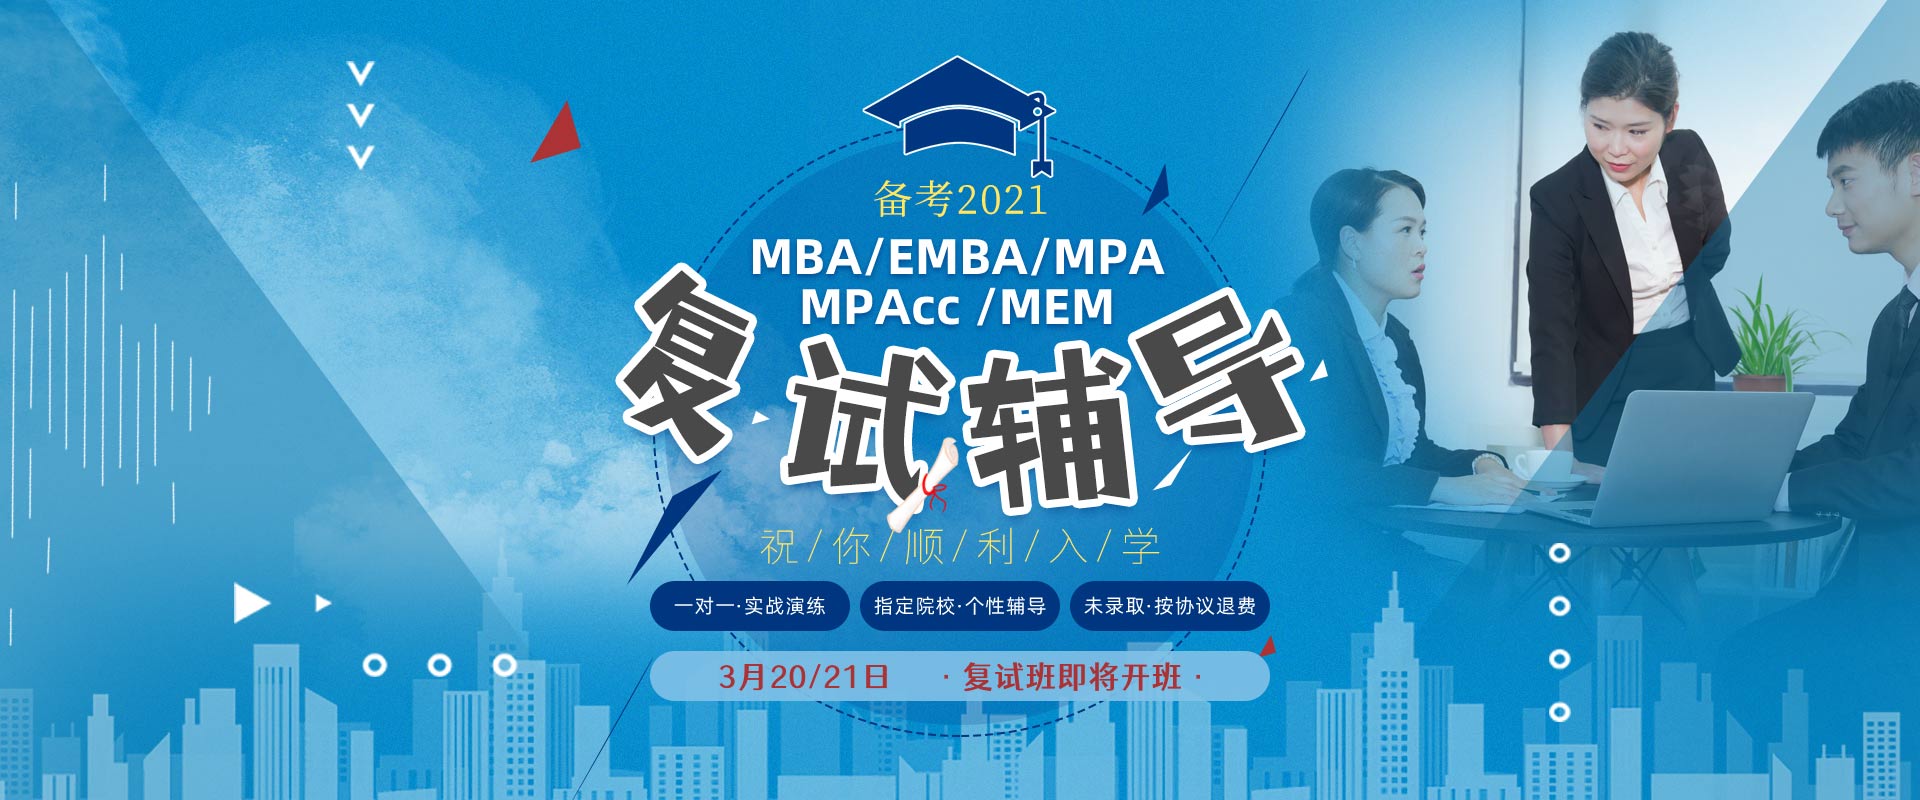 2021年入学MBA、EMBA、MPA、MPAcc、MEM复试辅导班，无锡MBA、EMBA、MPA、MPAcc、MEM复试培训